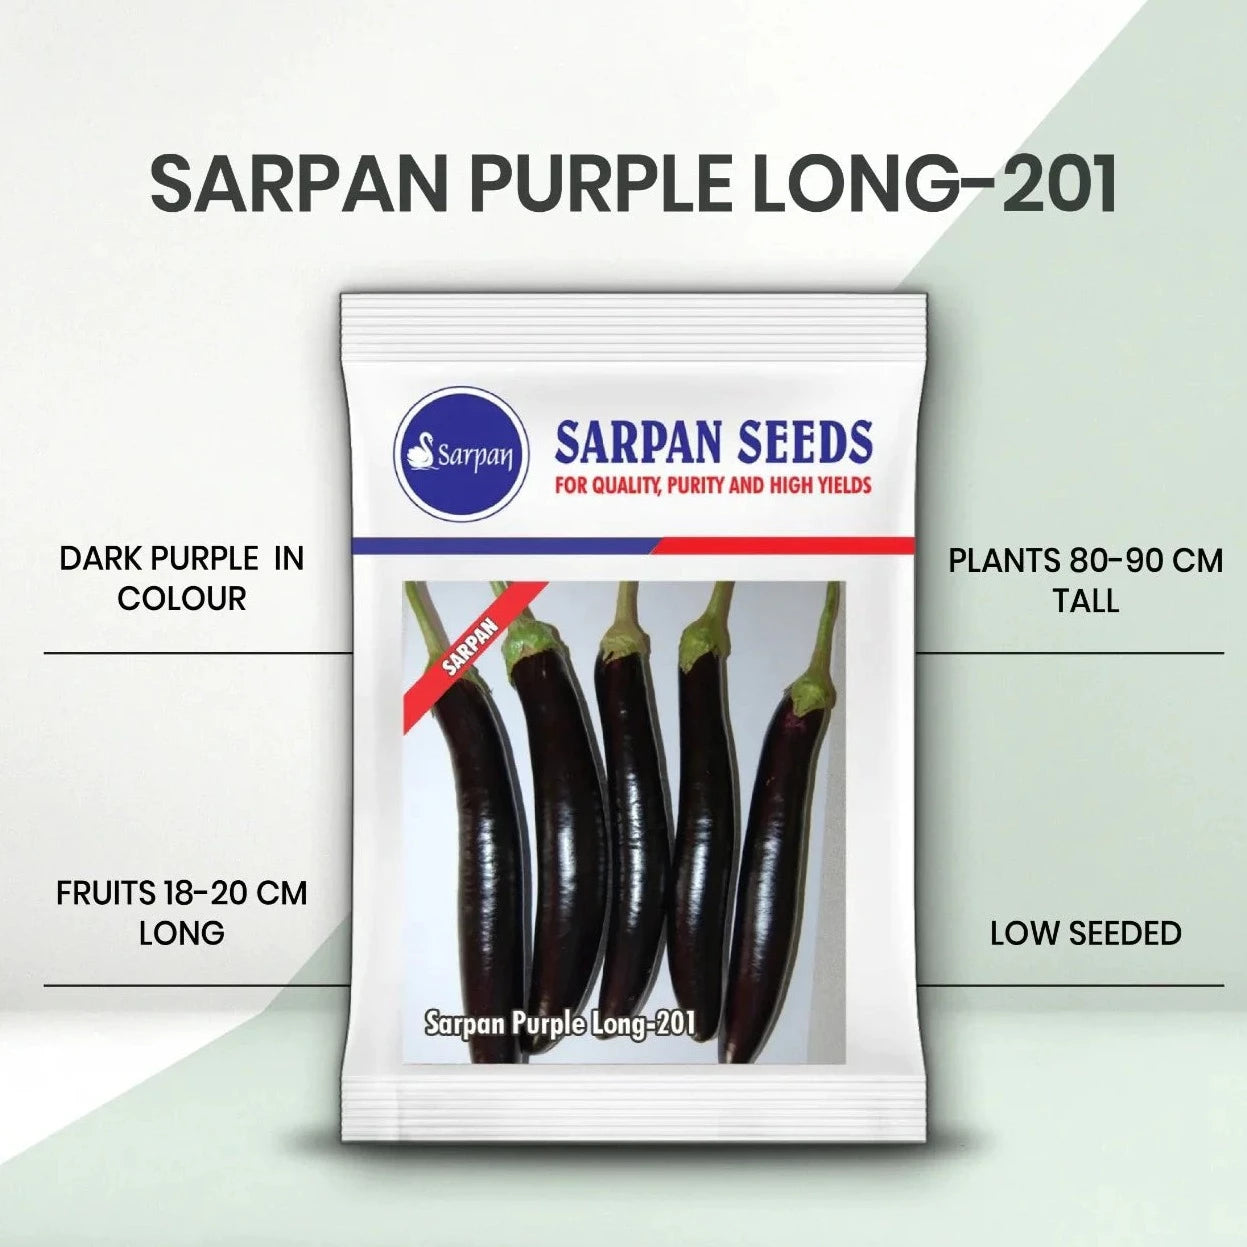 Sarpan Purple Long - 201 Brinjal Seeds | F1 Hybrid | Buy Online at Best Price